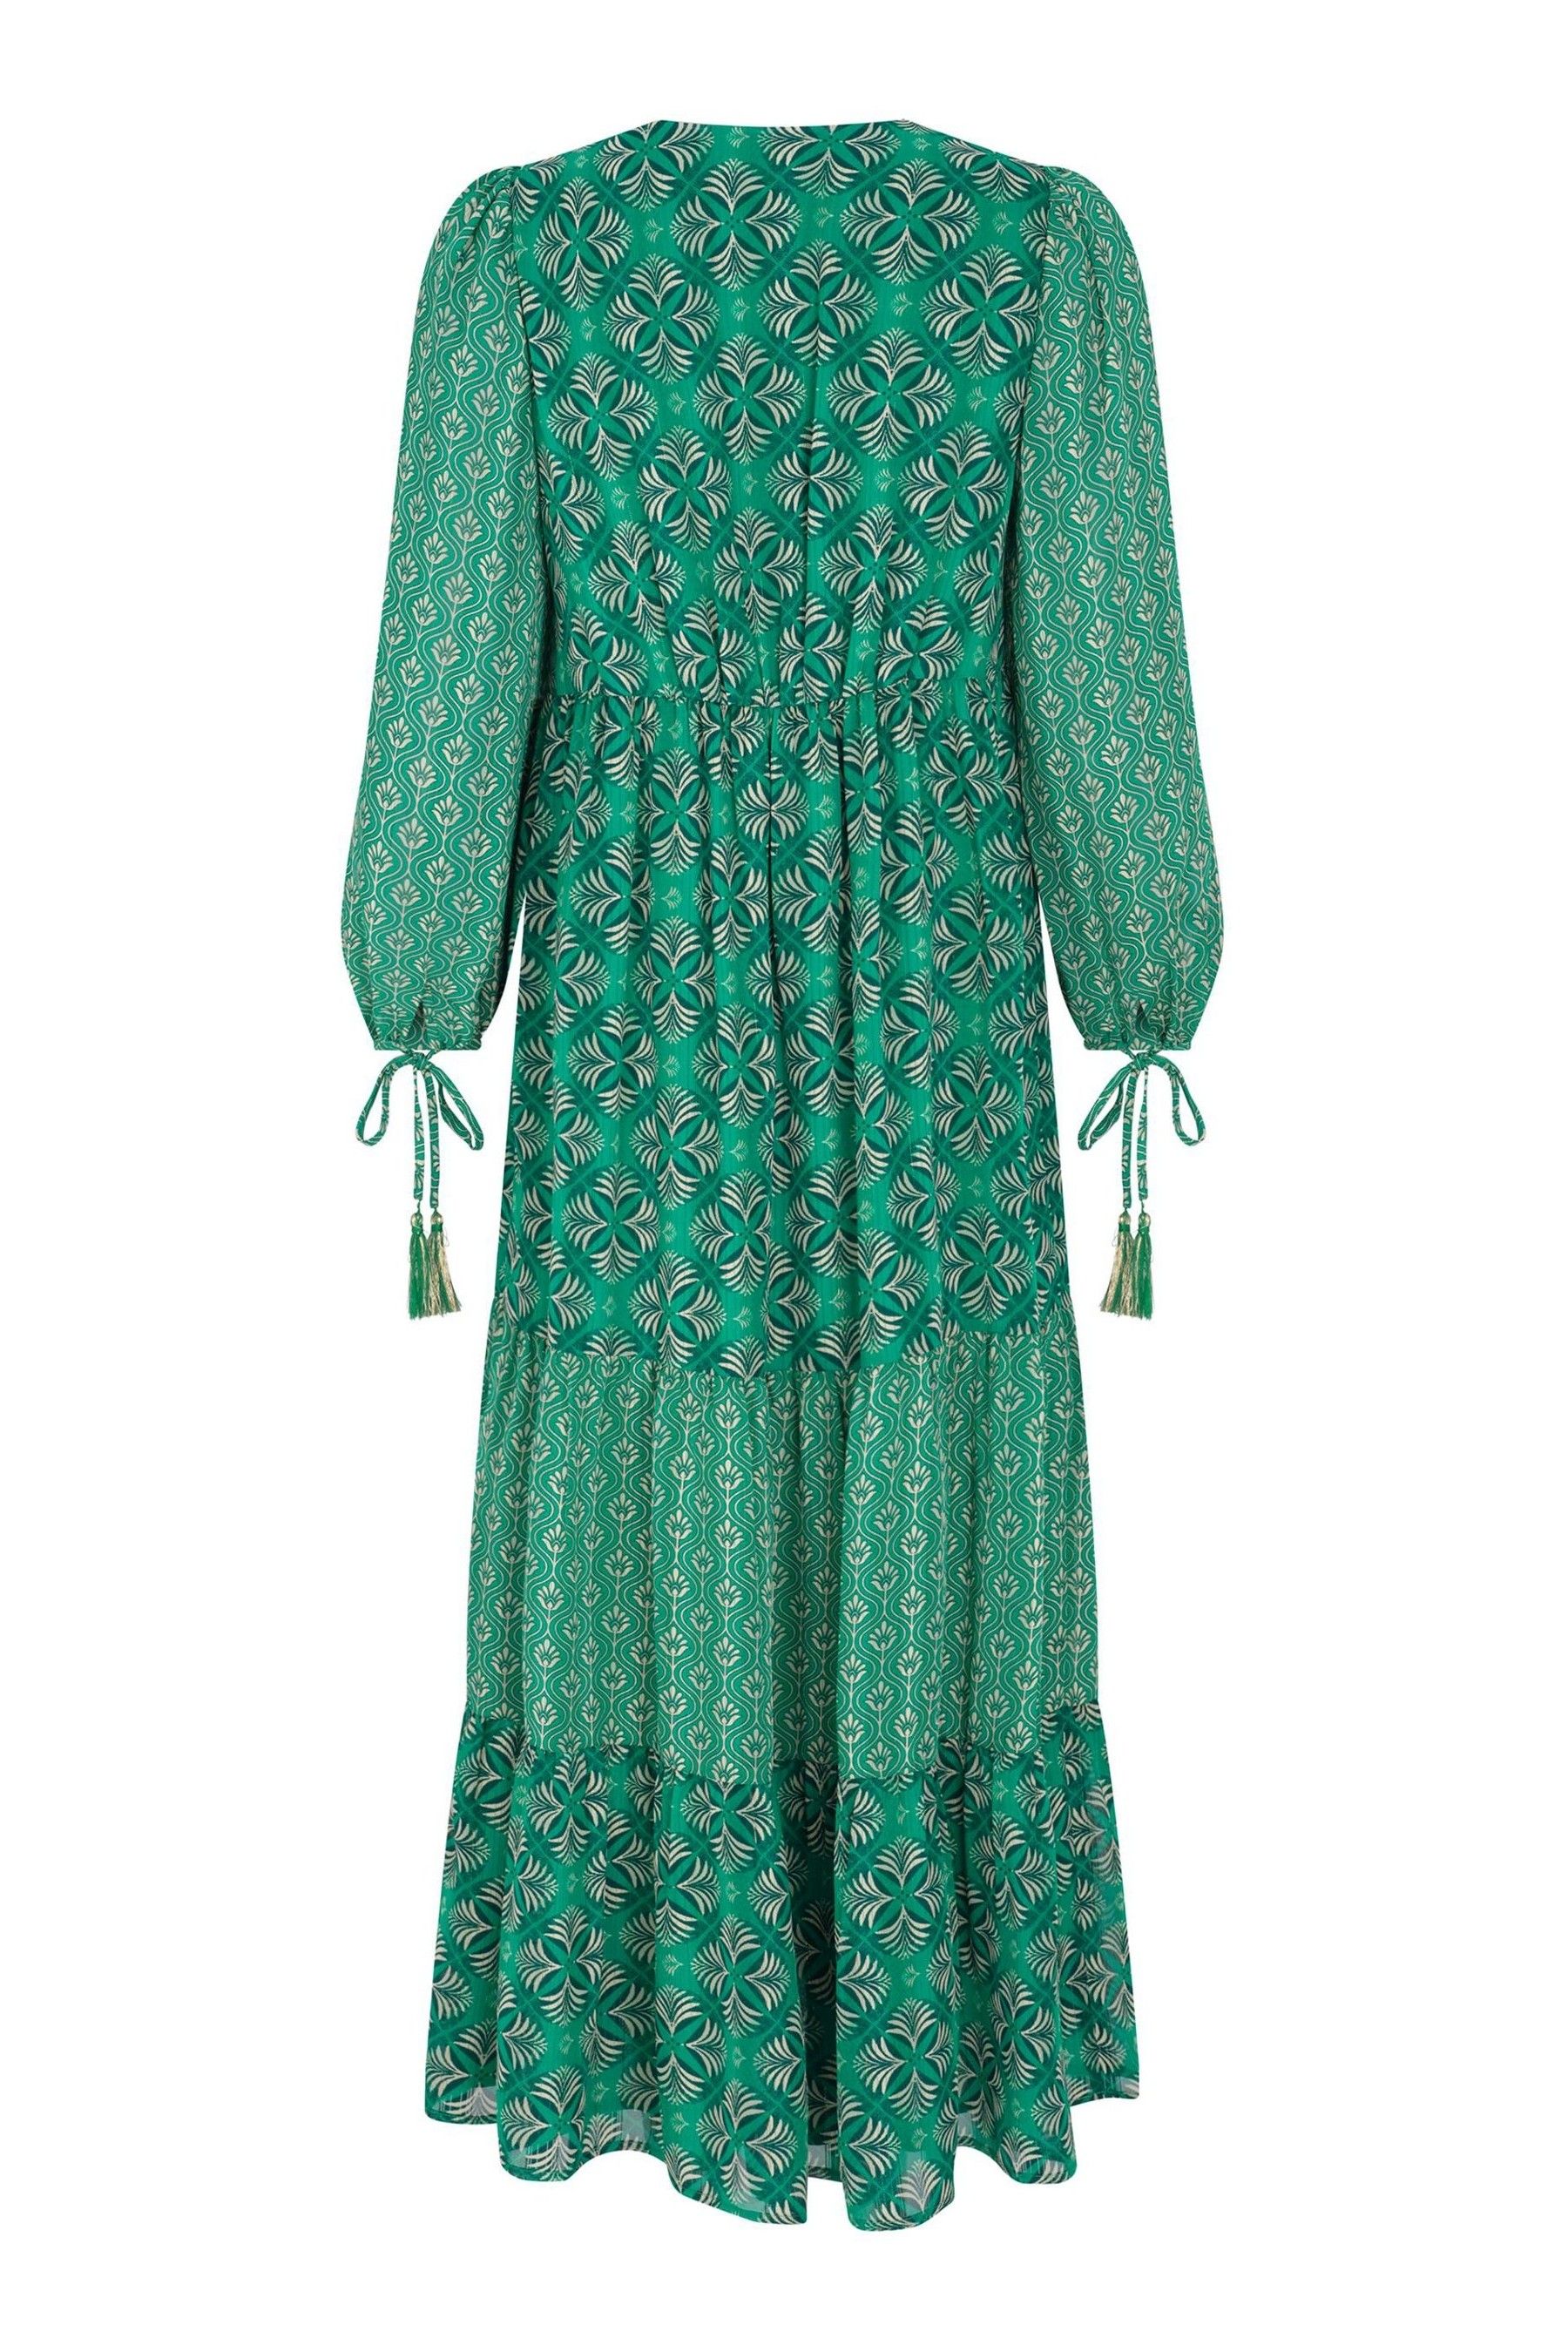 Buy Mint Velvet Green Esme Print Tassel Maxi Dress from Next Ireland